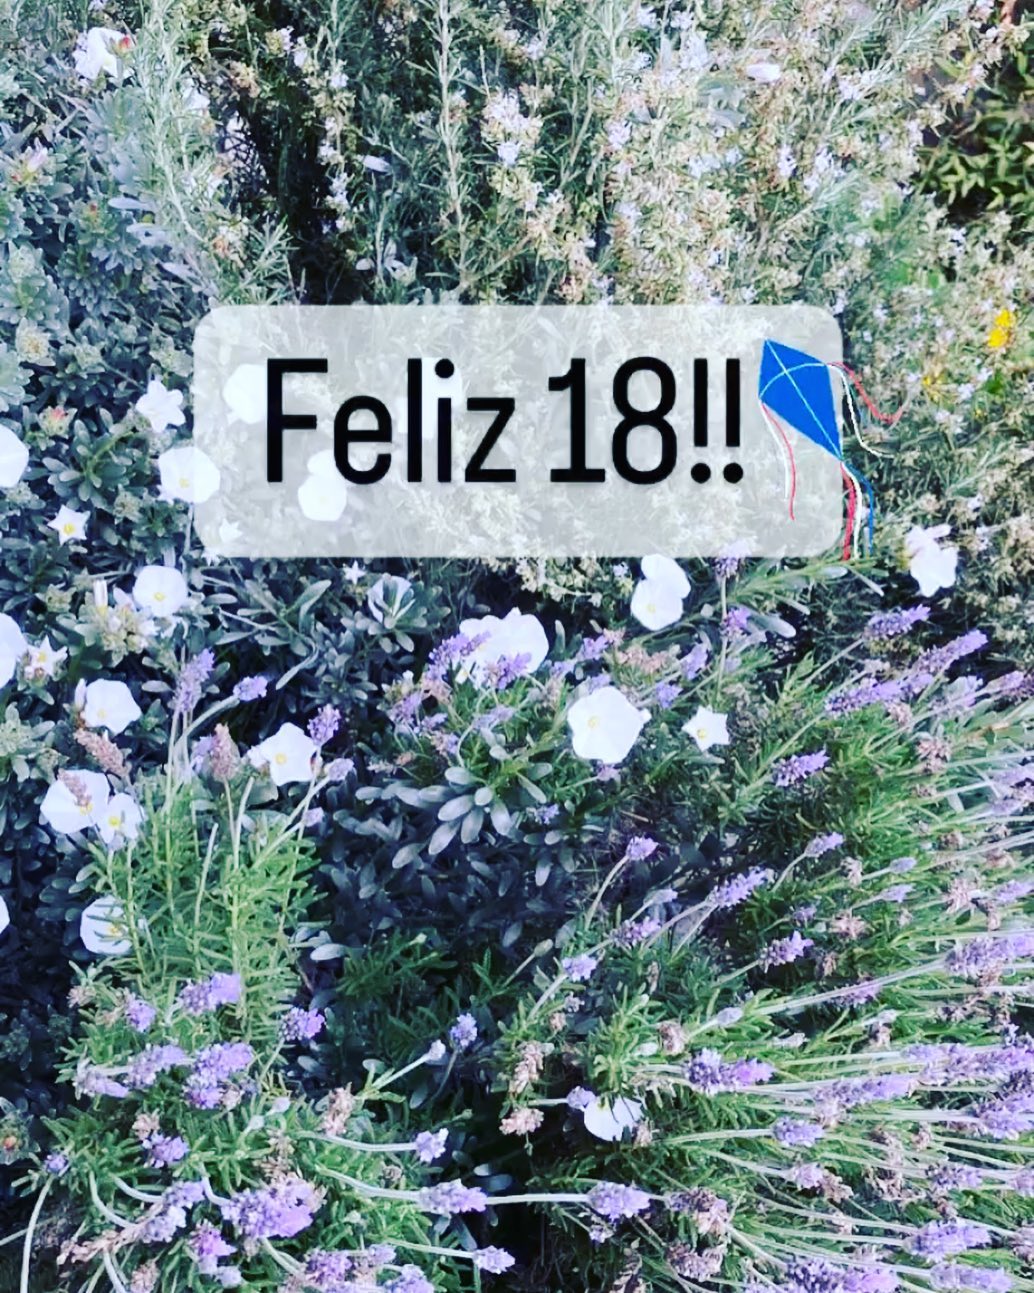 Feliz 18!! Que se rodeen de buena onda y biopañales😆😆.
El martes volvemos con todo 🚙
www.biopañales.cl
.
.
.
.
.
.
.
.
#biopañales 
#pañalesbebé 
#delivery 
#pañales 
#pañalesecológicos 
#santiagochile